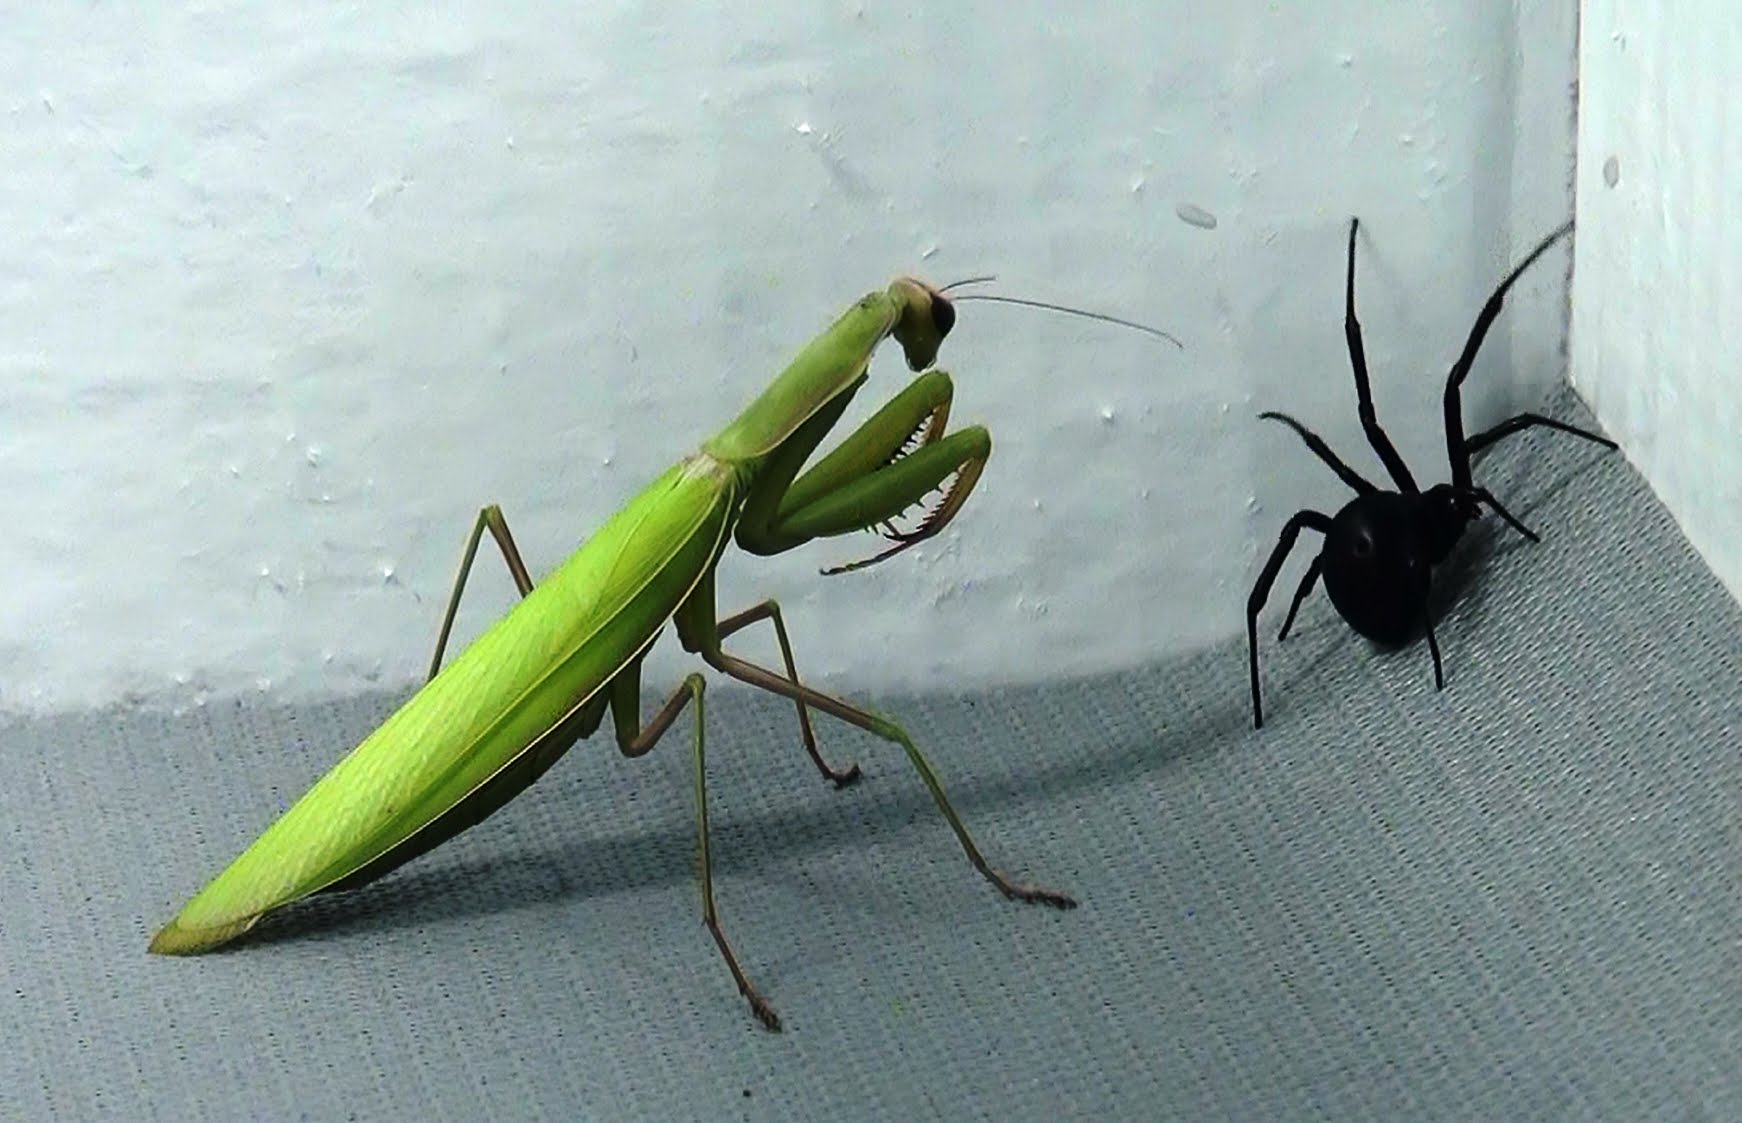 Black widow vs praying mantis